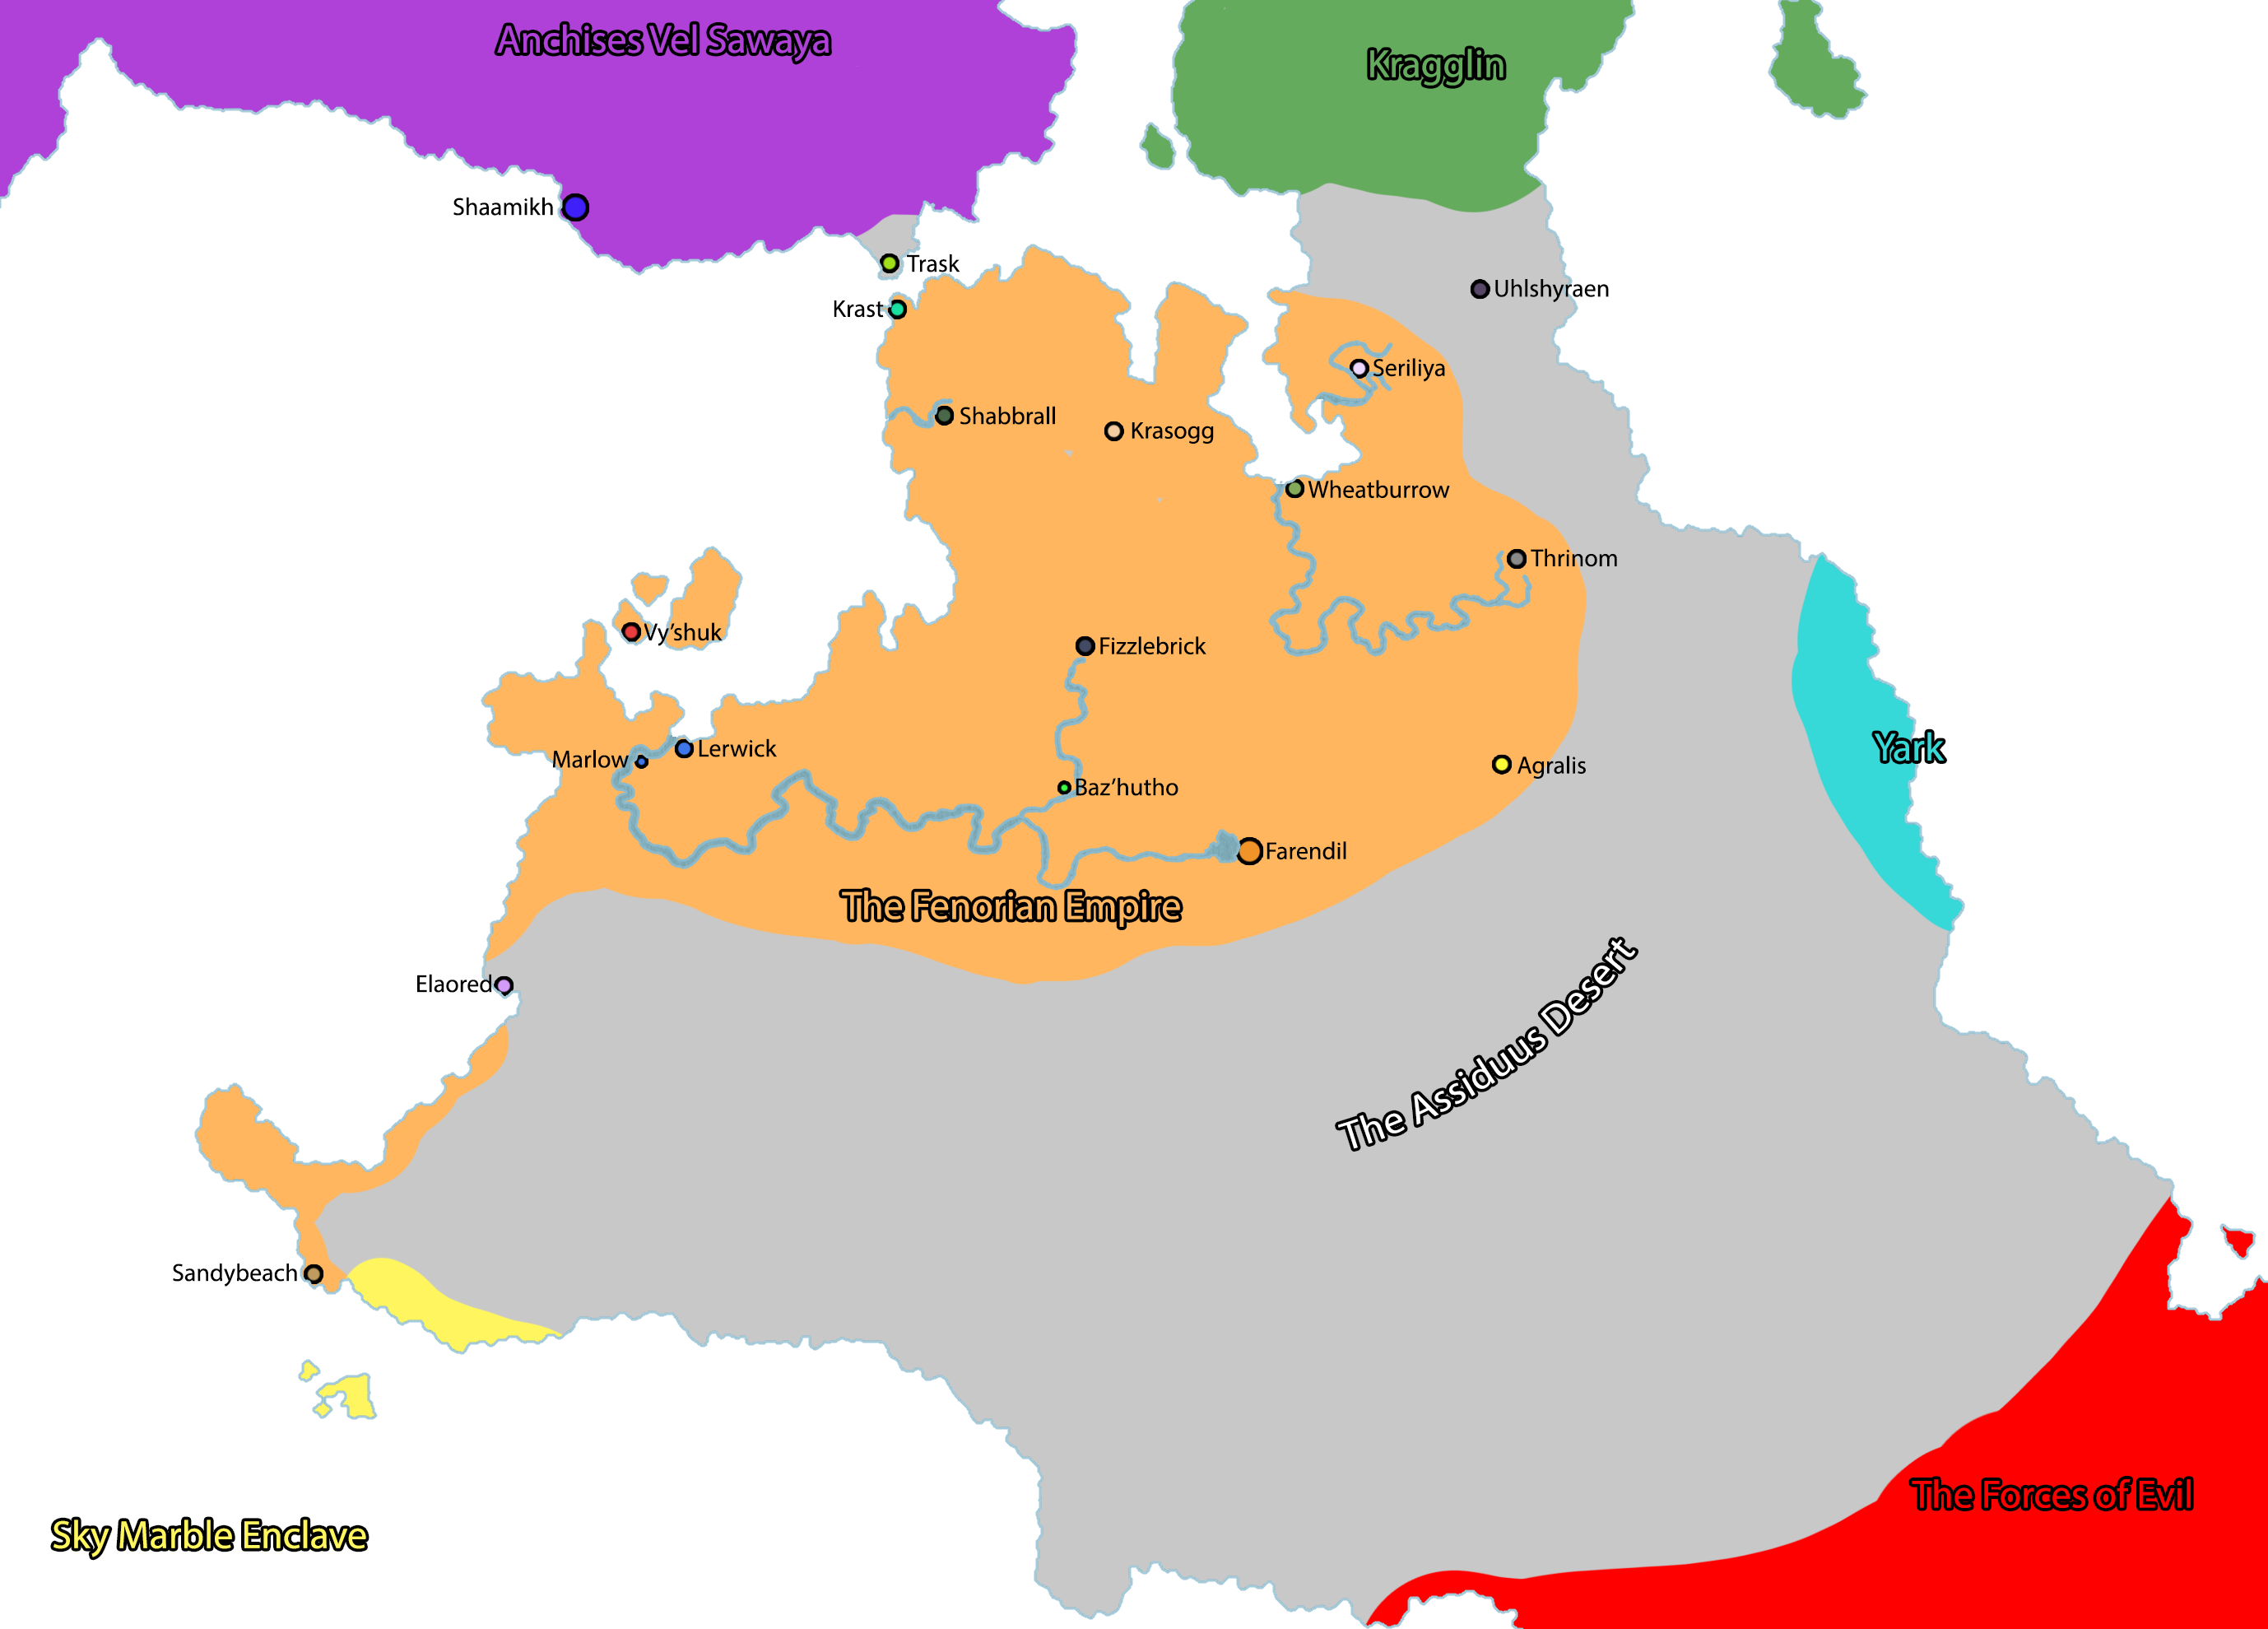 The Fenorian Empire cover